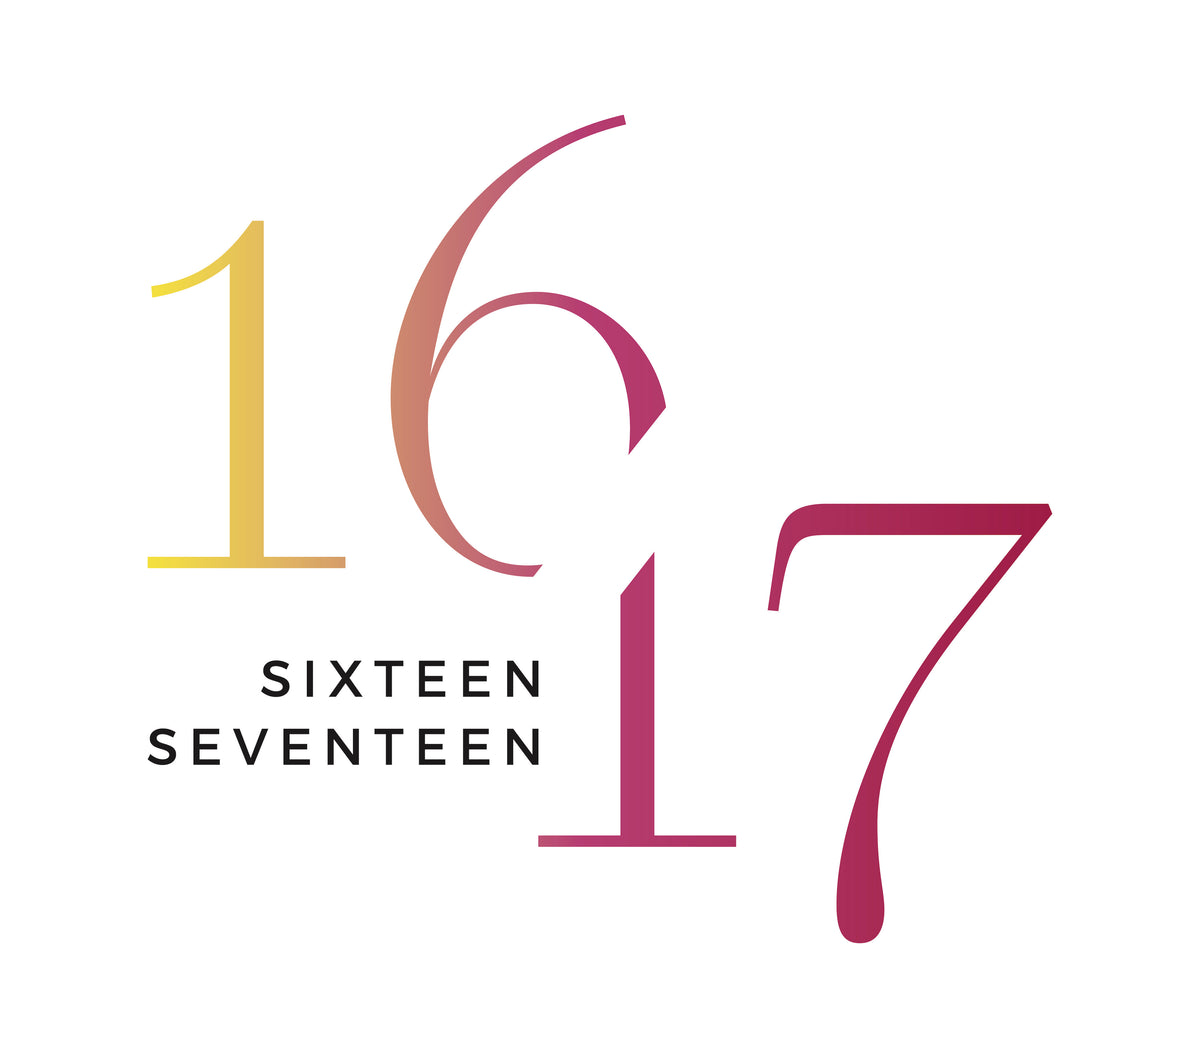 Sixteen Seventeen